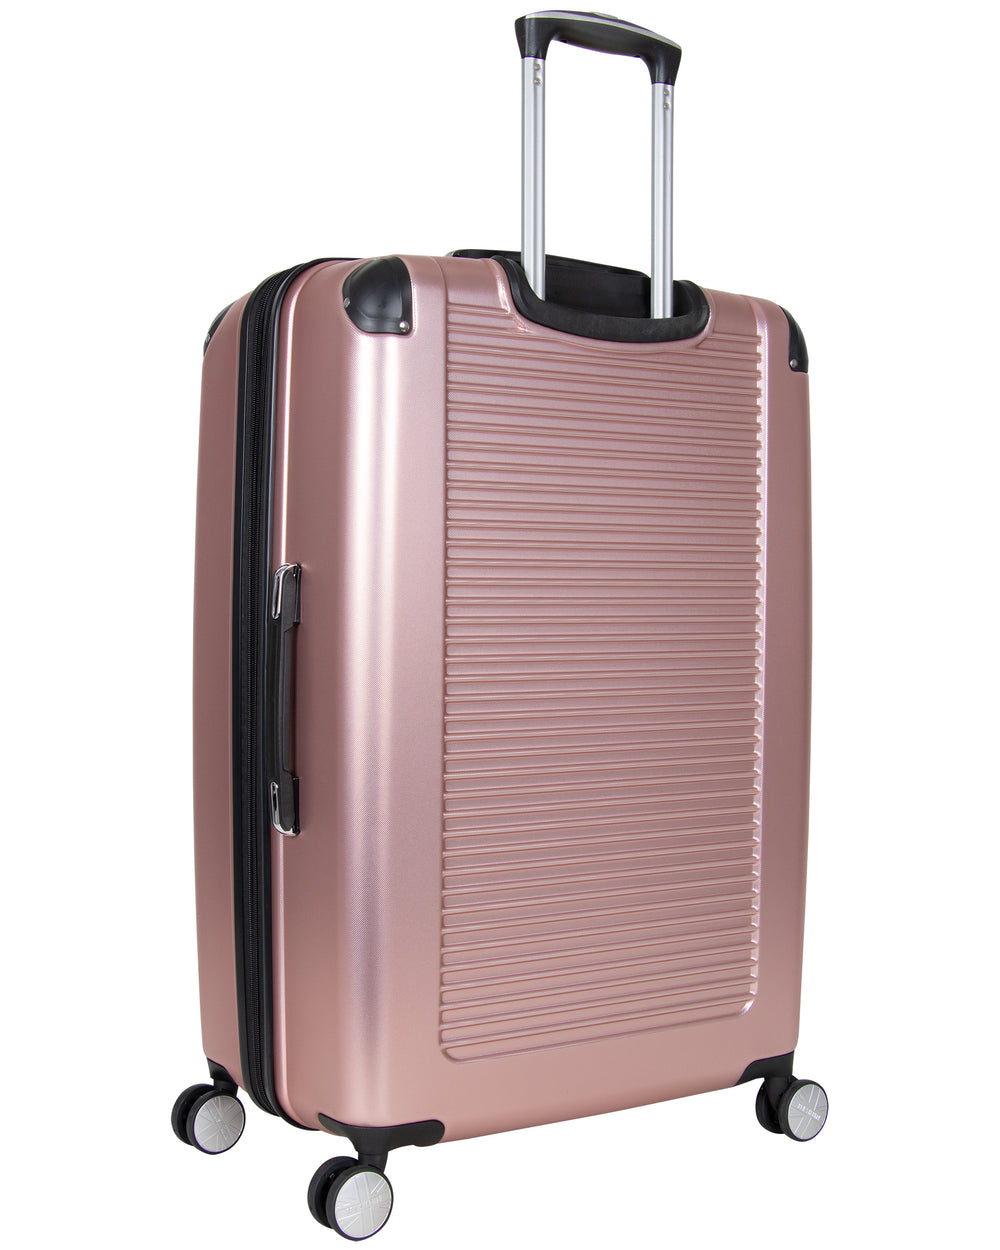 Norwich 2-Piece Hardside Expandable Luggage Set - Rose Gold